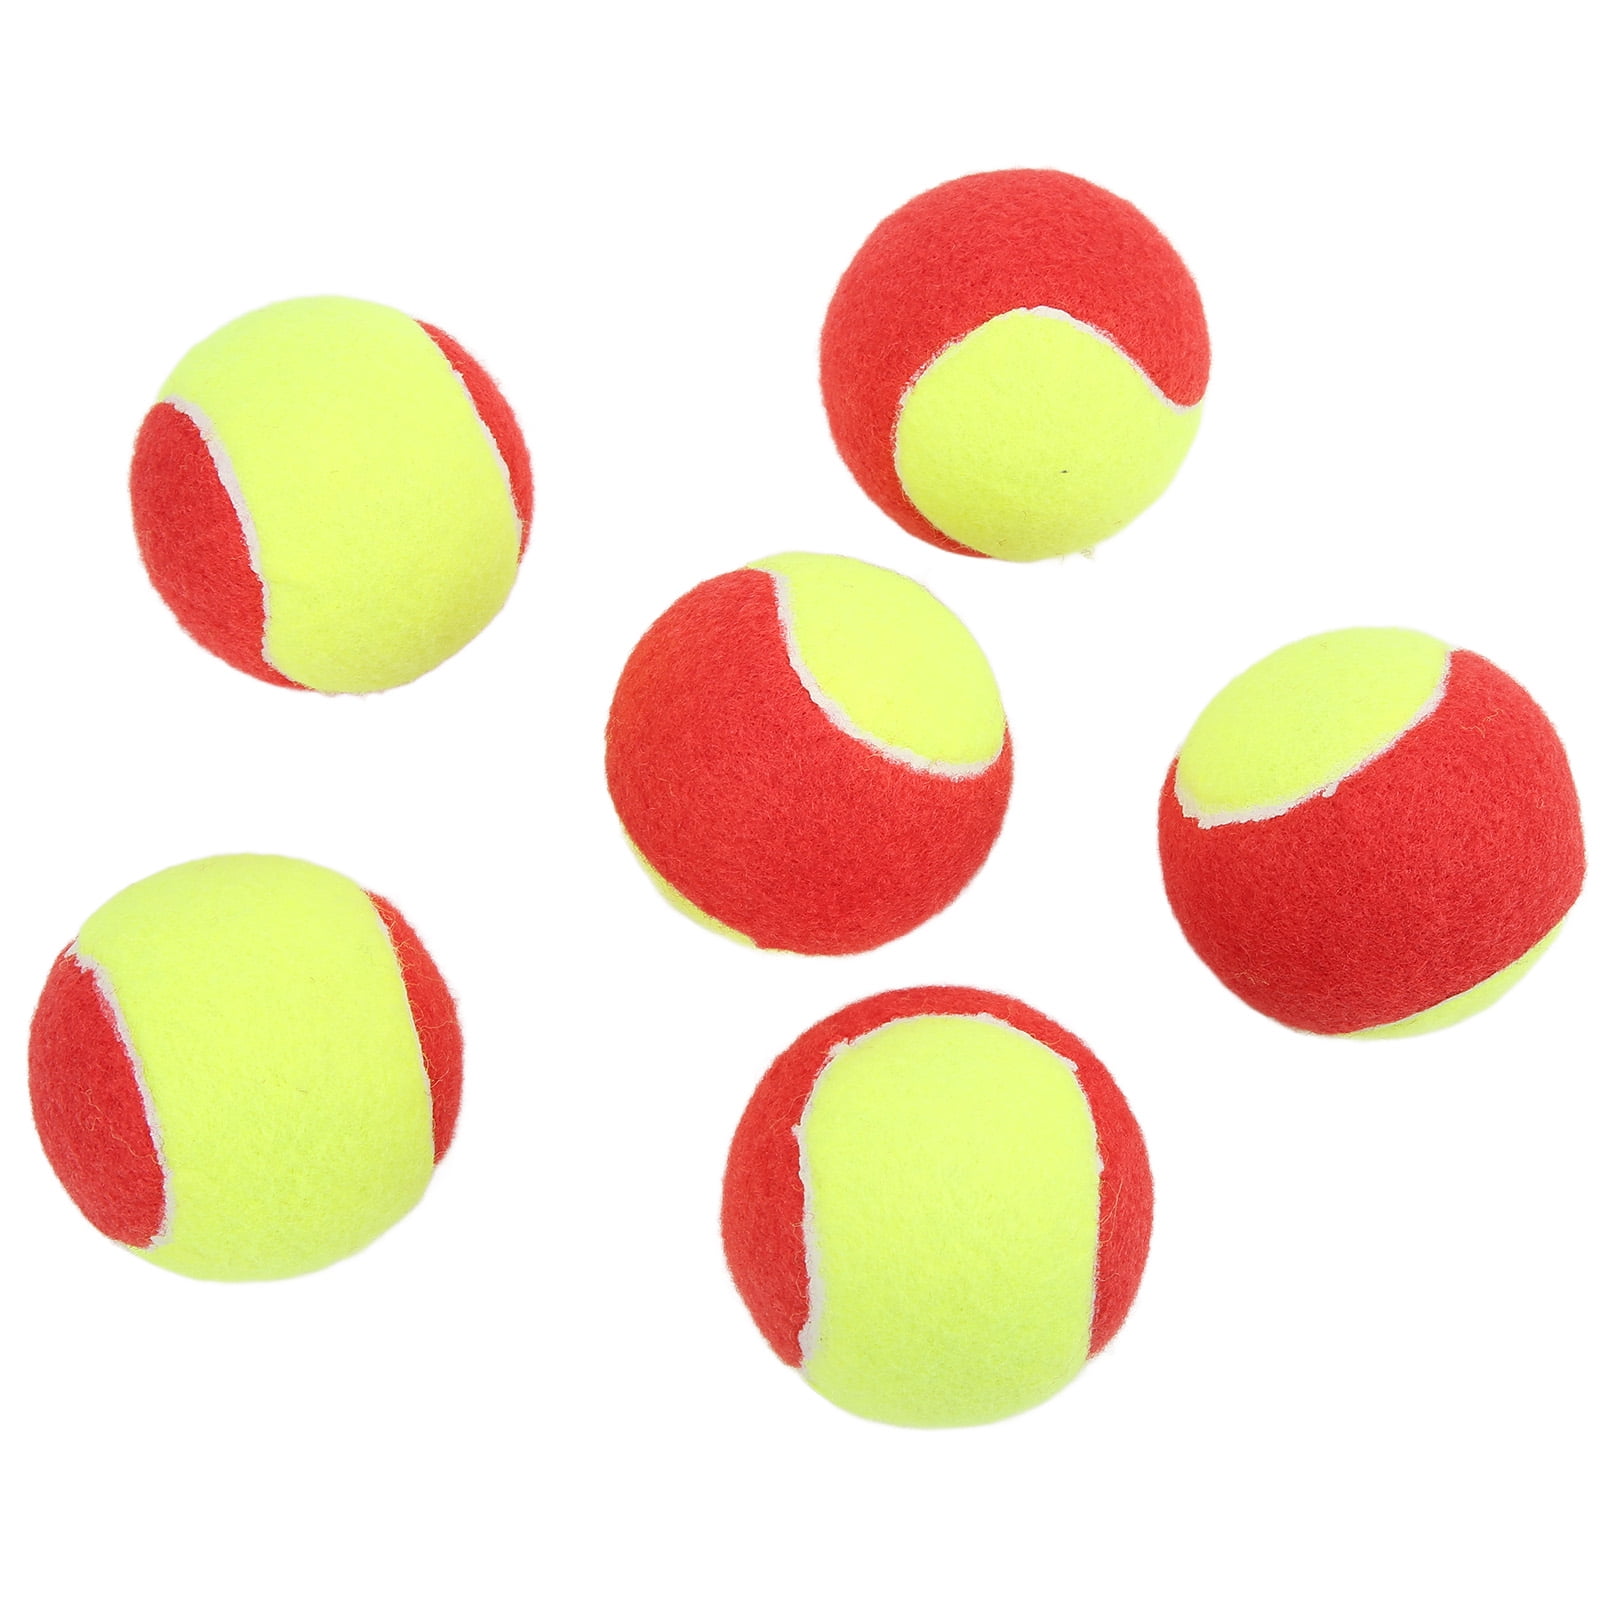 Premium Plush Youth Tennis Balls Waterproof Tennis Ball Natural Rubber Practice Tennis Balls Lightweight Elastic Tennis Trainning Ball 6Pcs Tennis Balls 